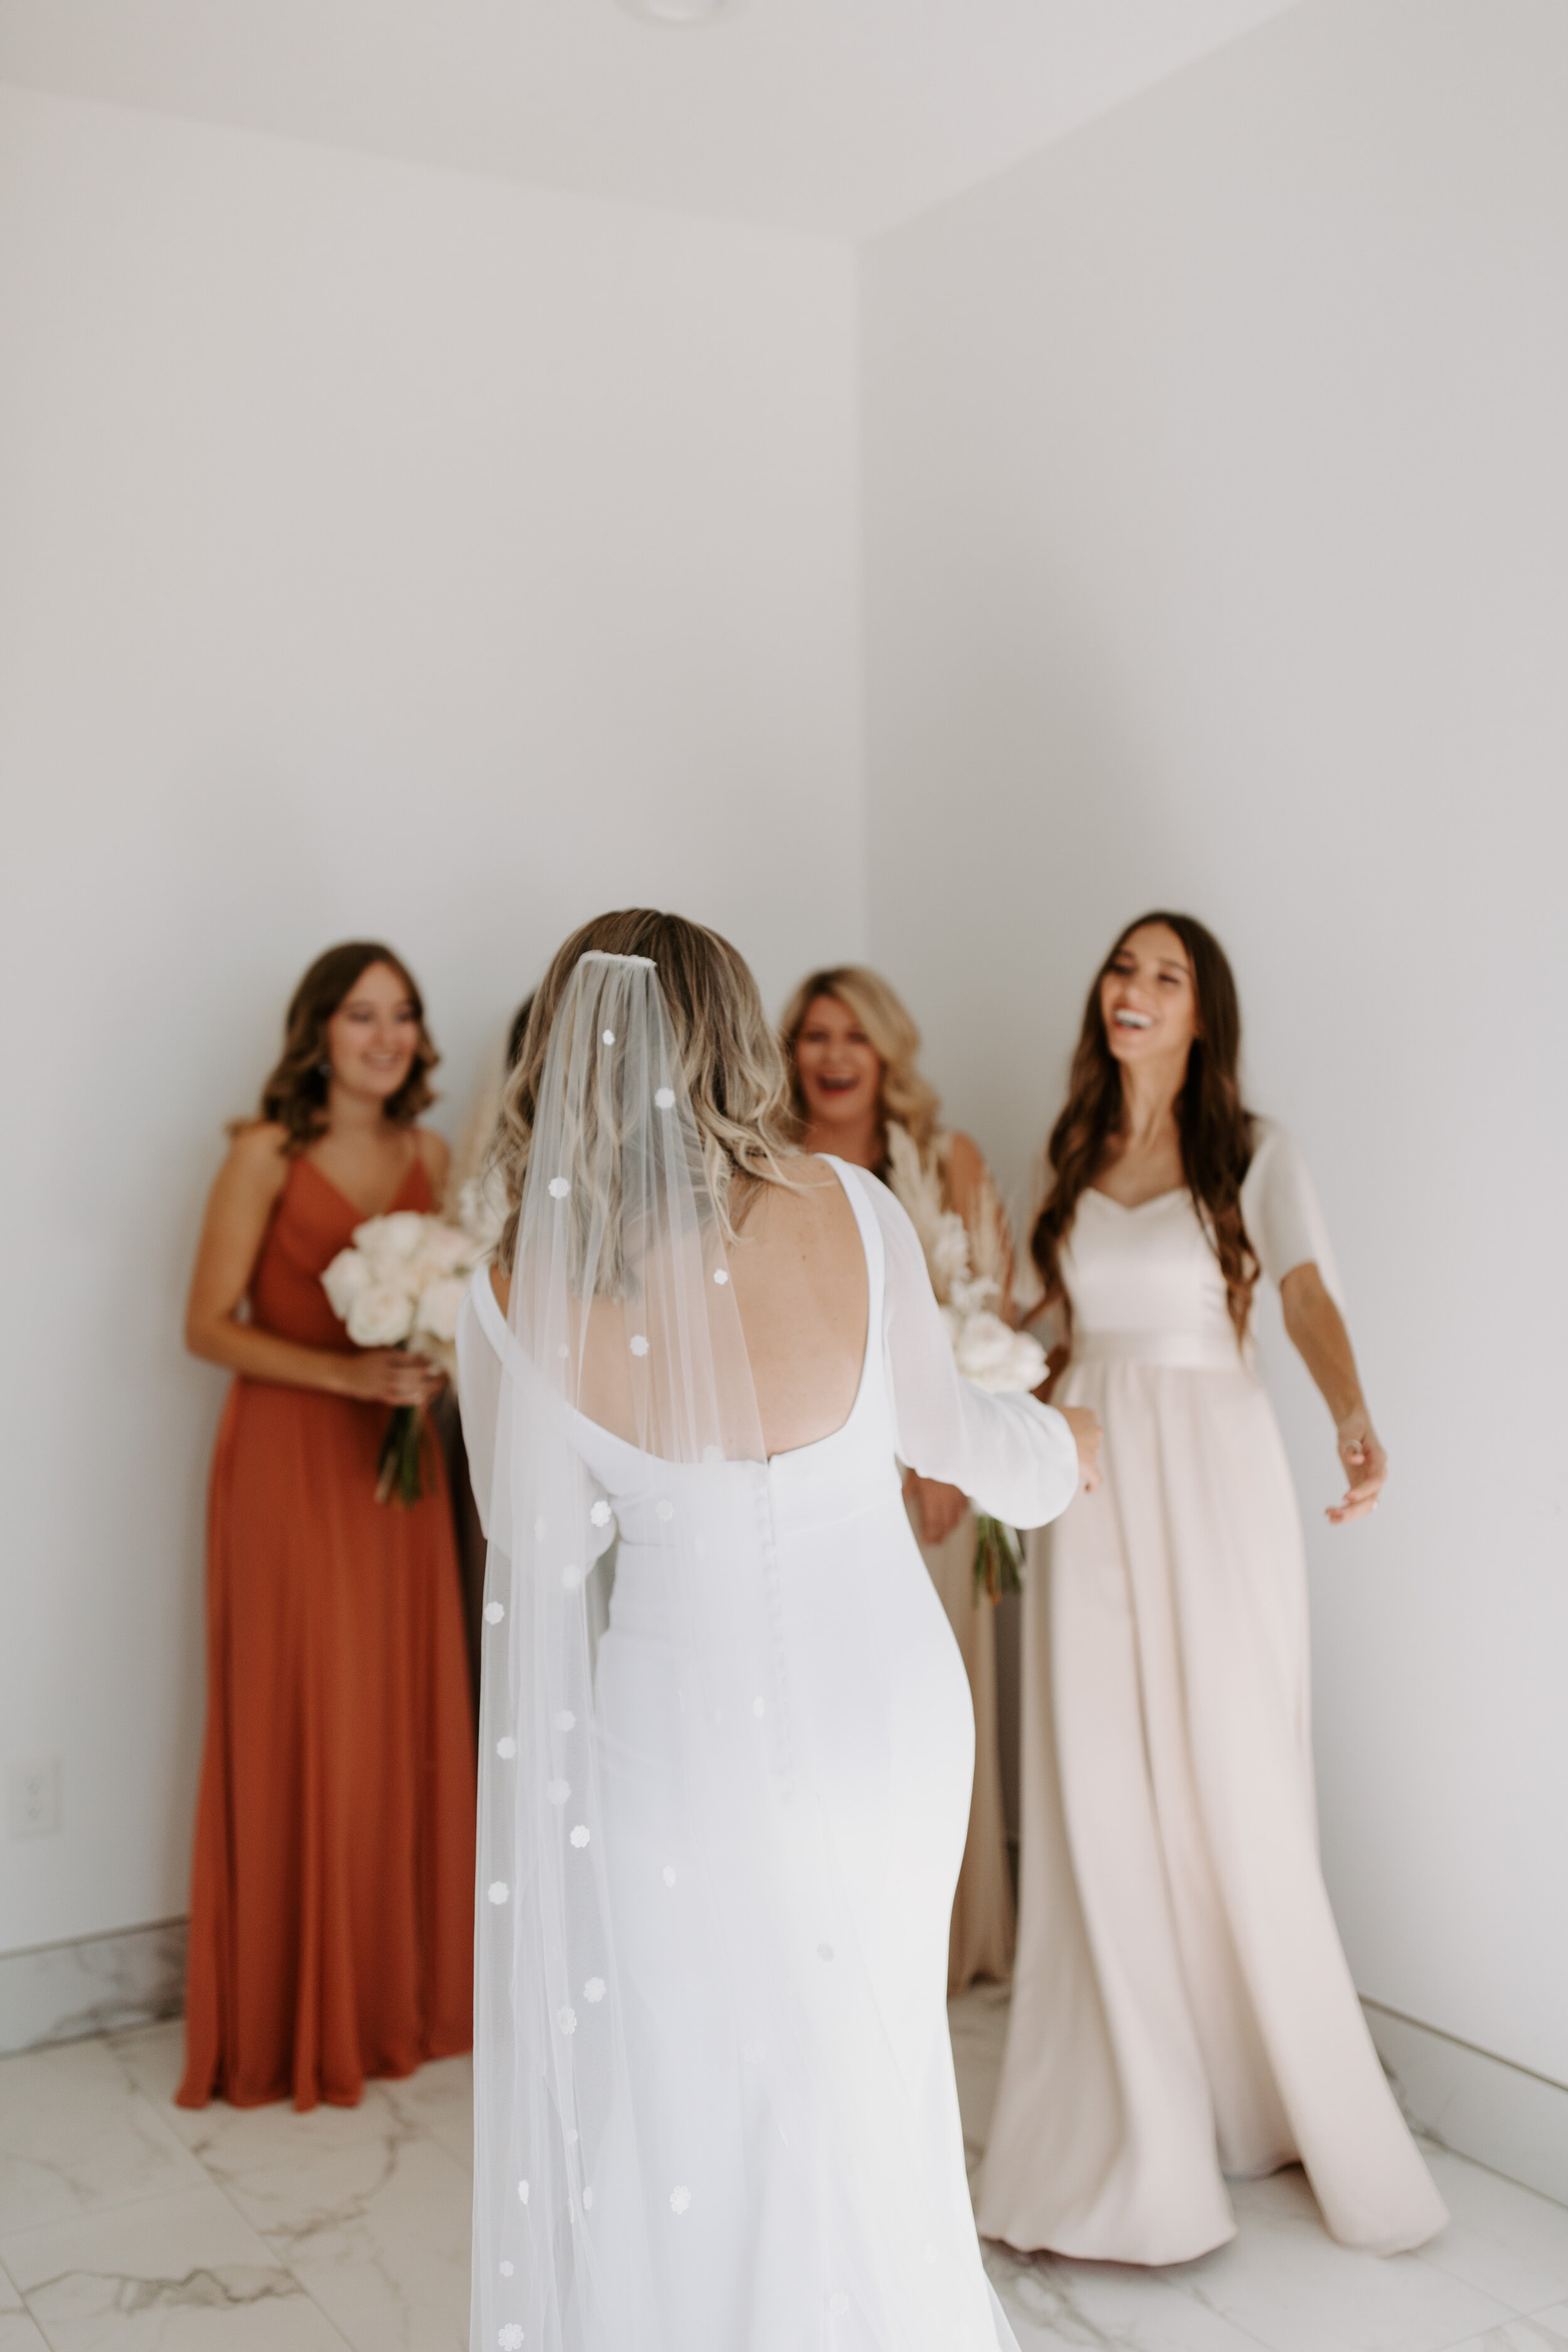  Alyssa Kristin Sydney Wedding Dress a&amp;be bridal shop Sacramento 